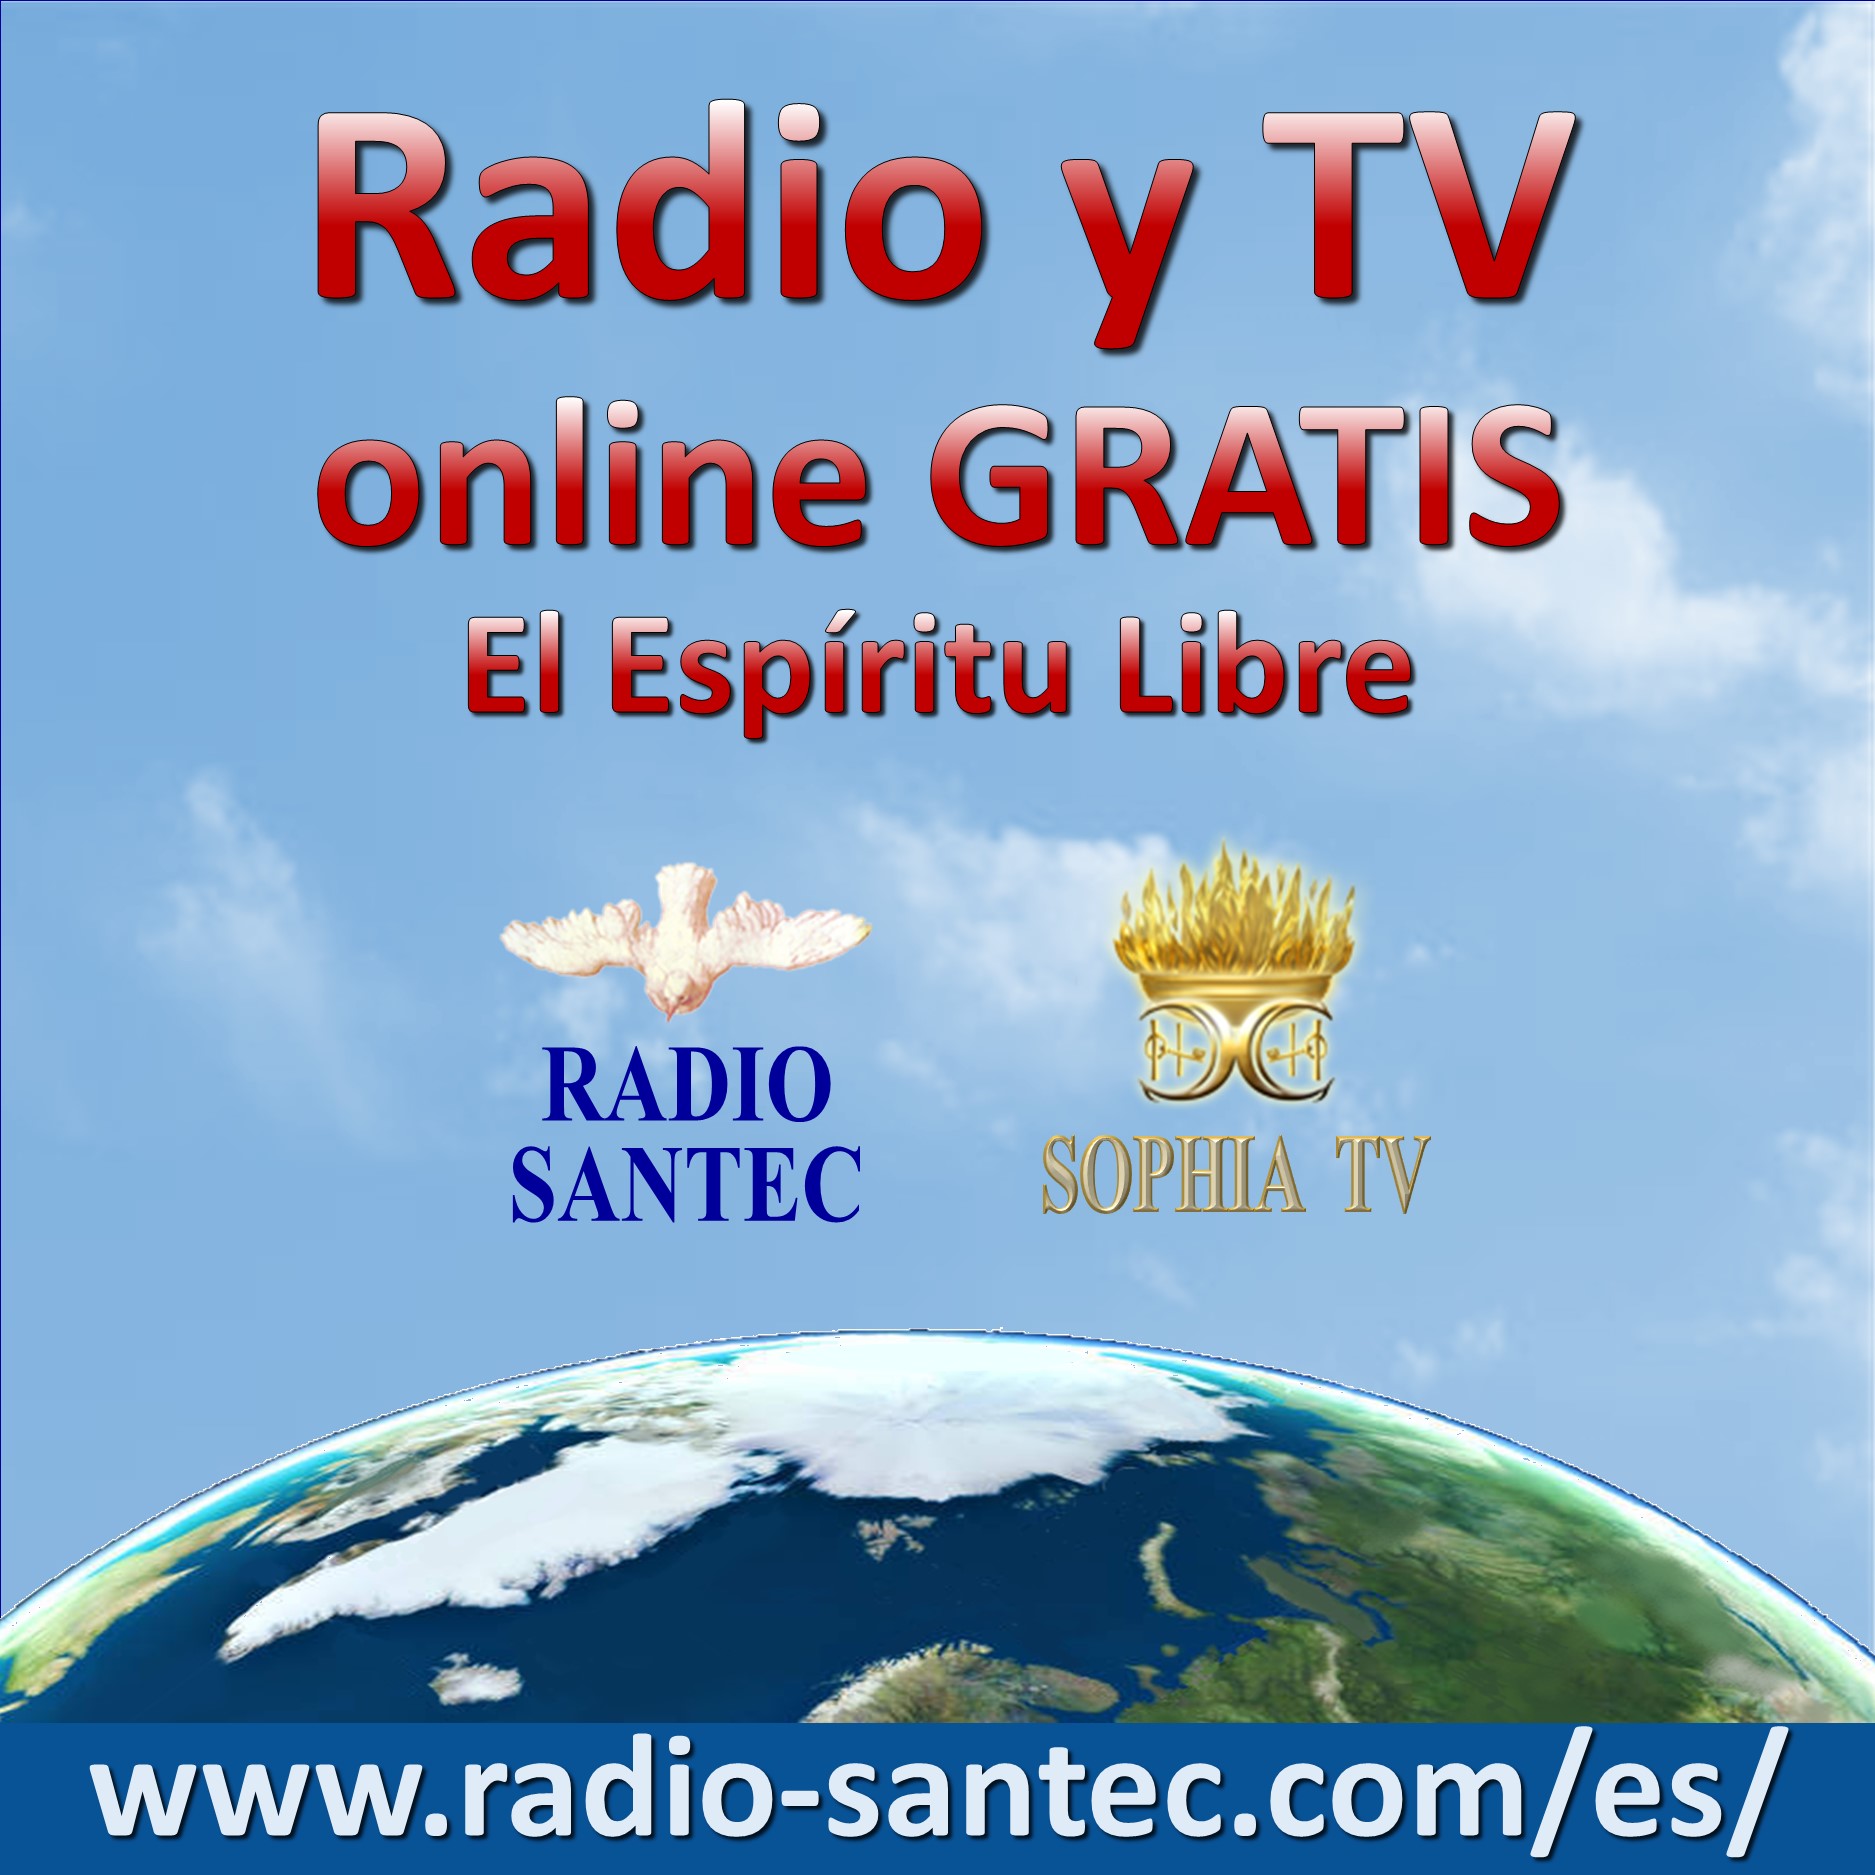 RADIO Y TV - Online gratis - EL ESPIRITU LIBRE